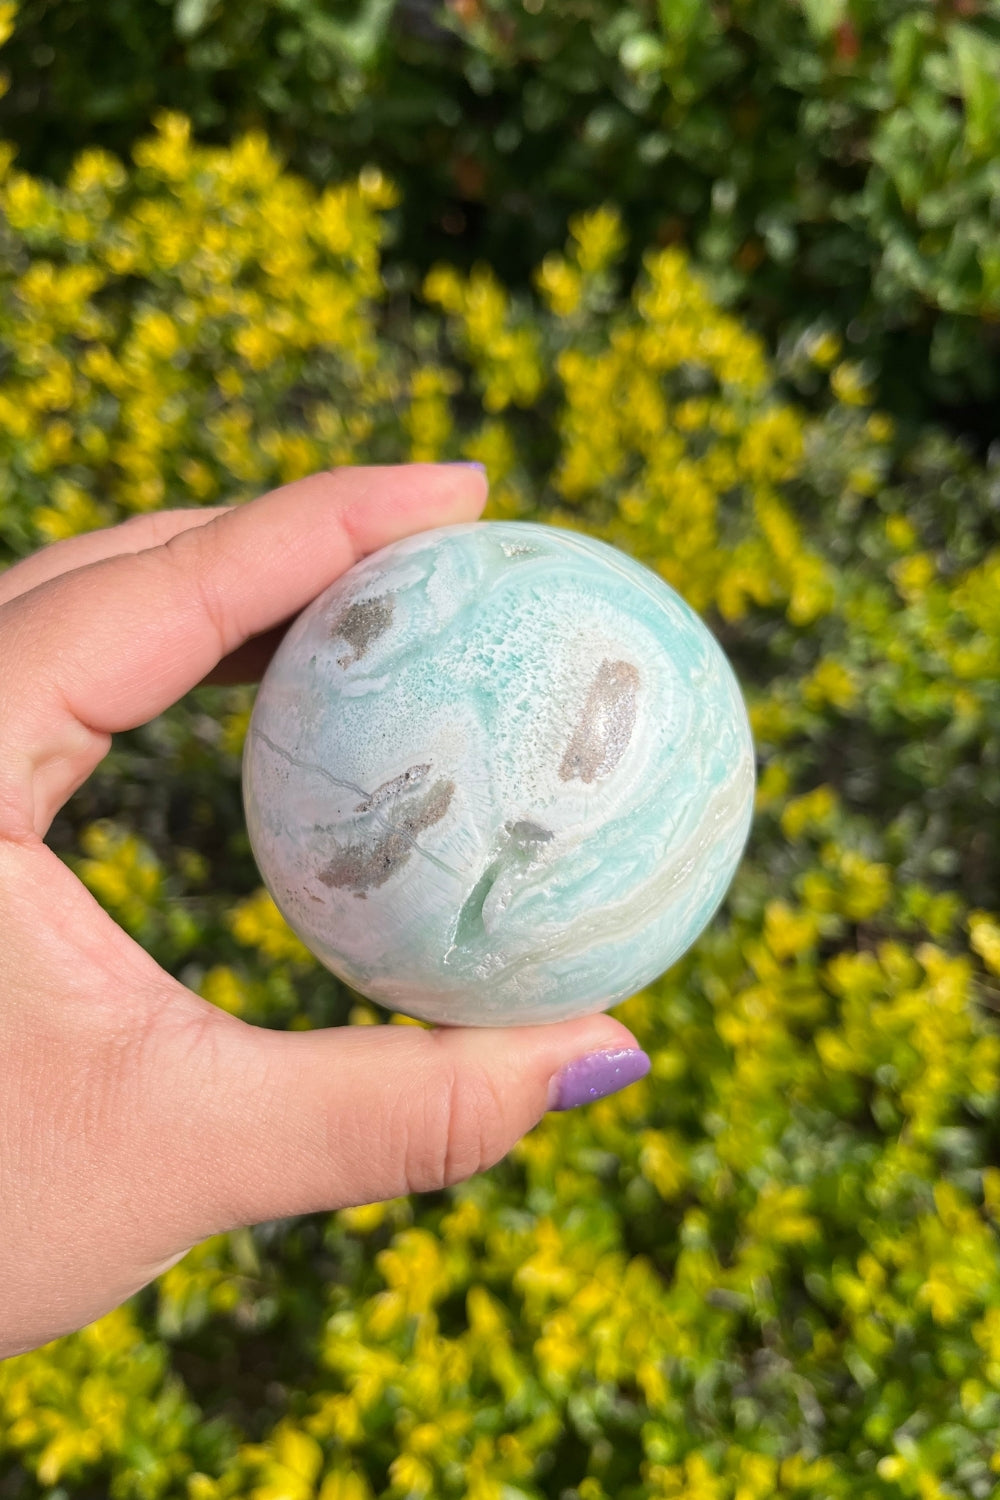 Caribbean Blue Calcite Sphere #3